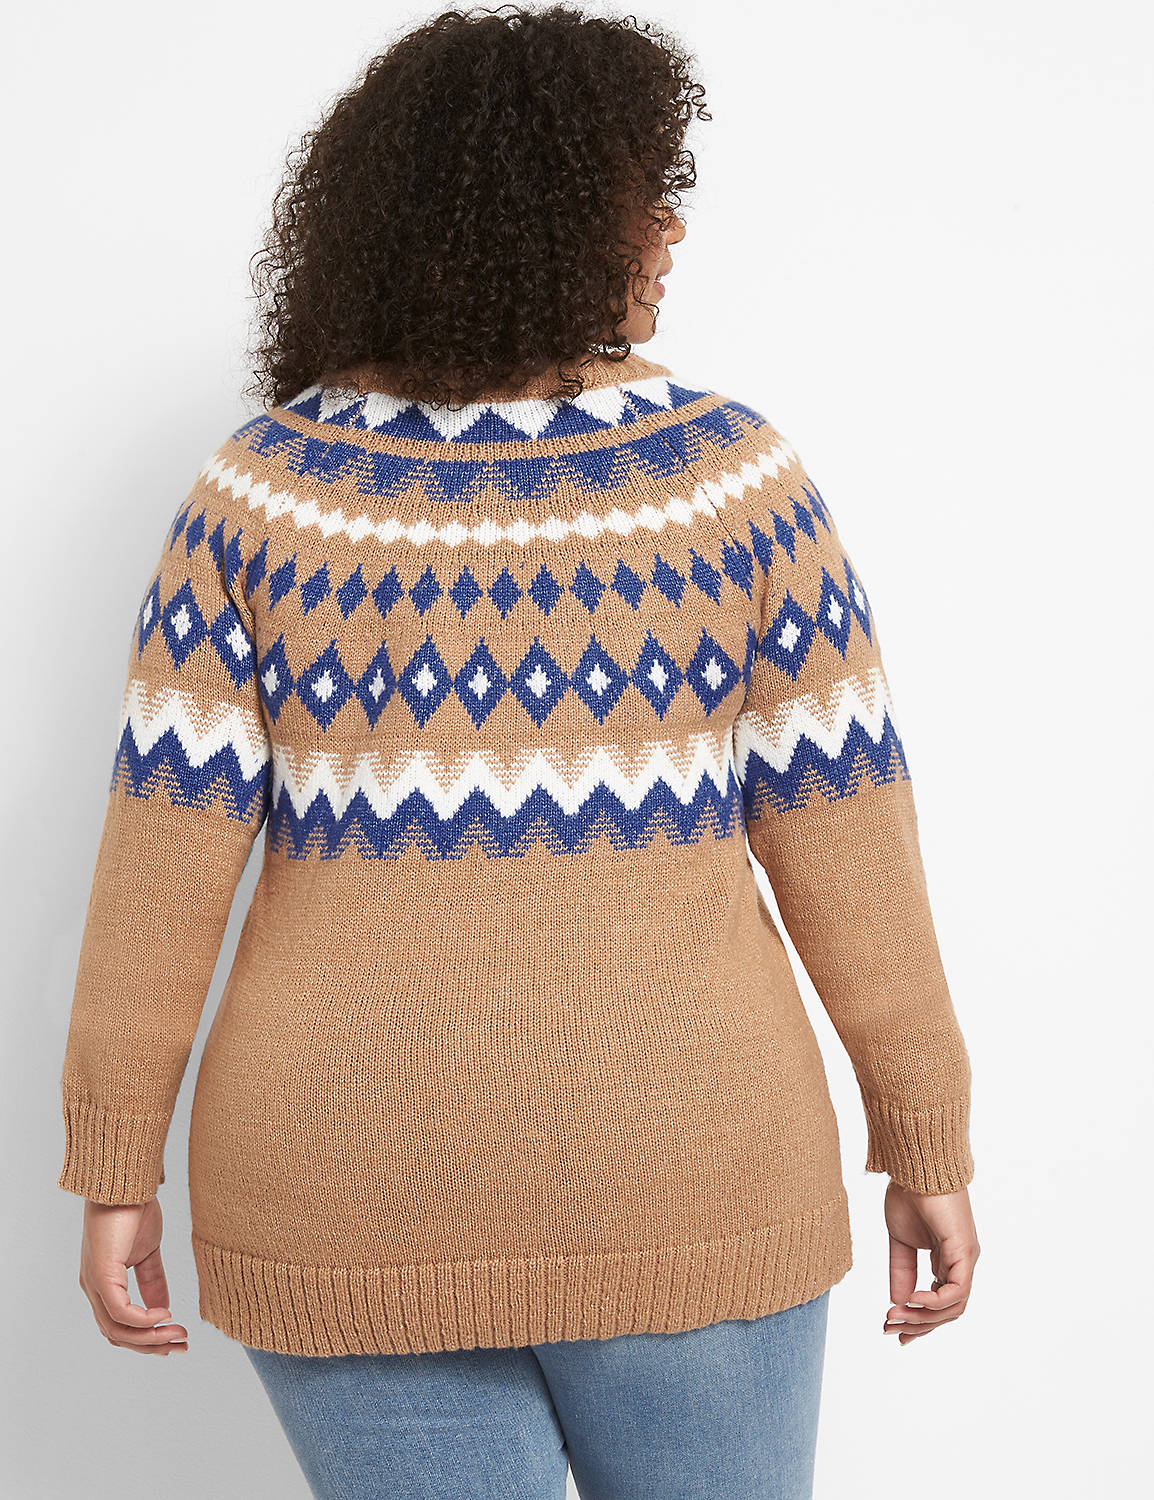 Raglan-Sleeve Fair Isle Sweater Product Image 2